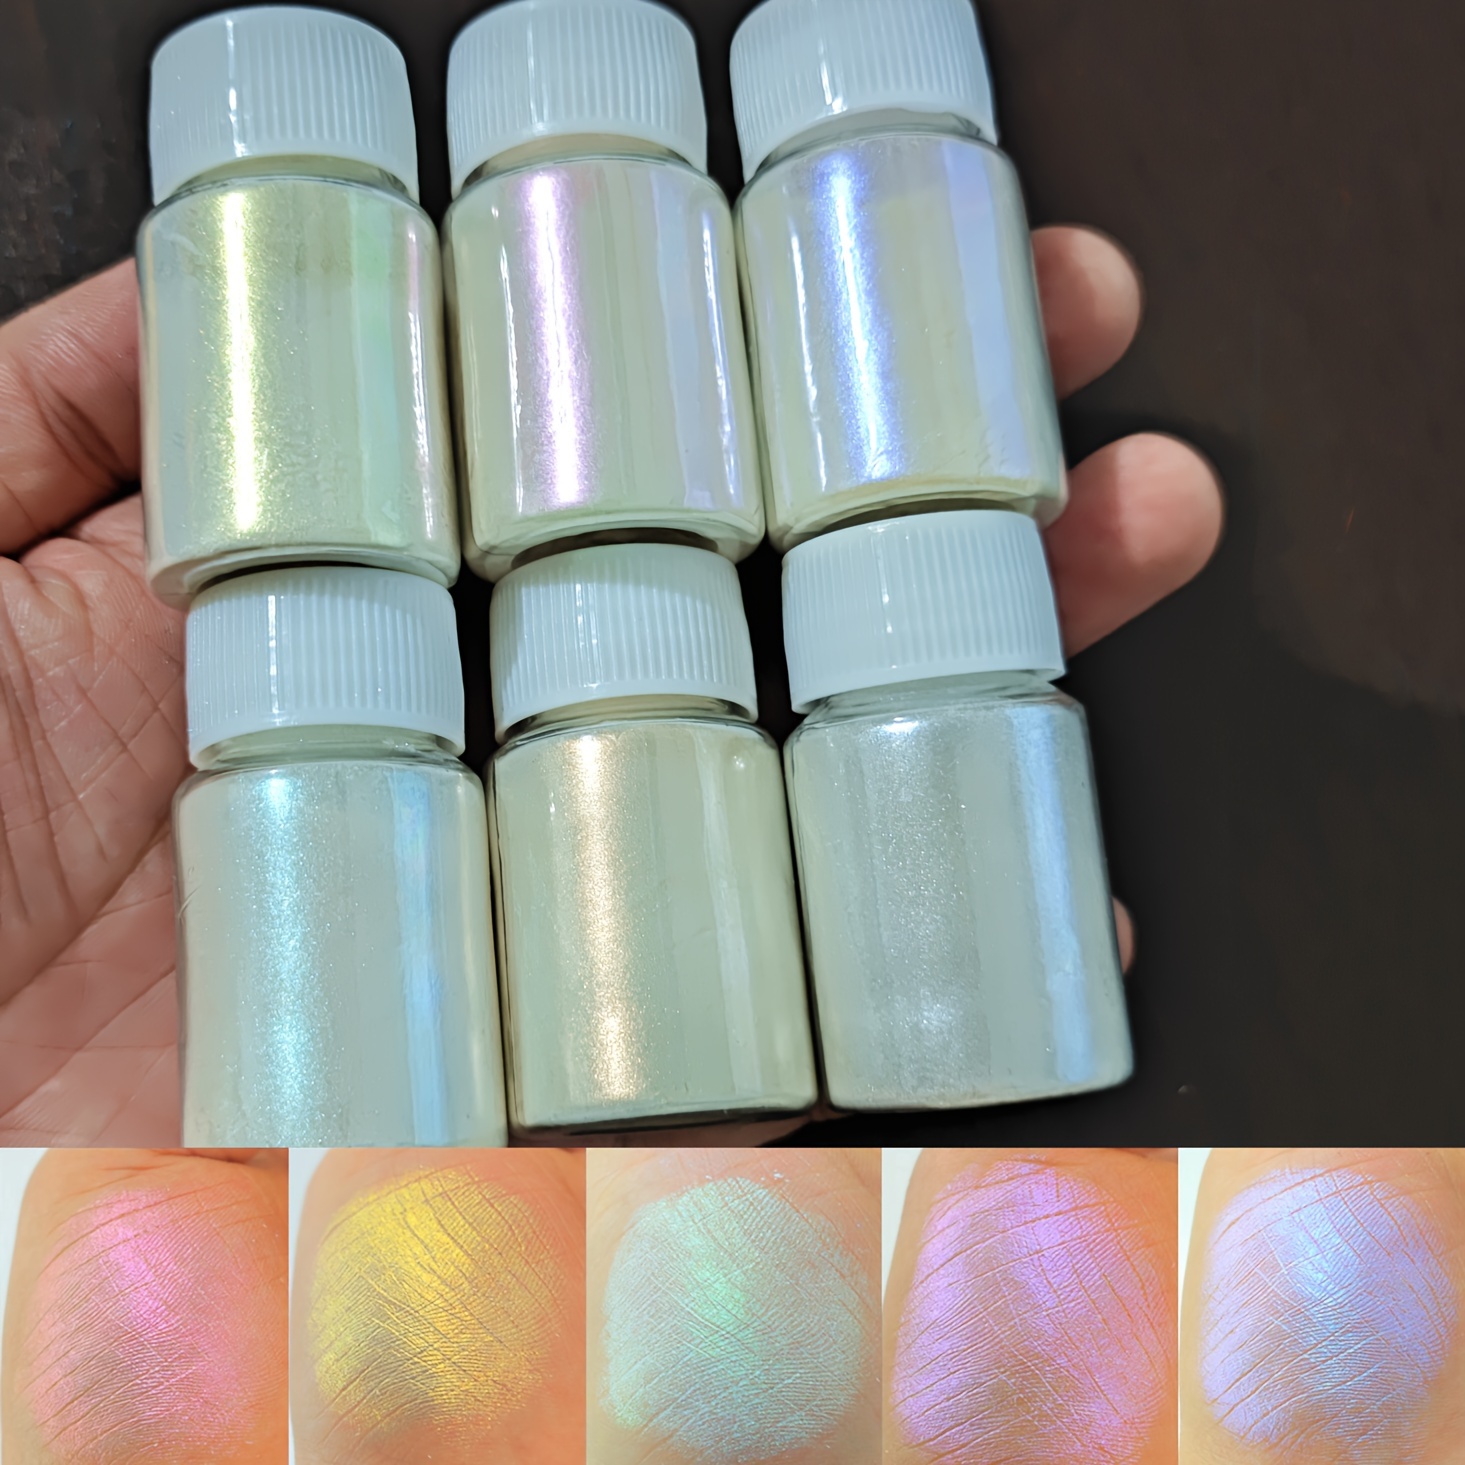 Tinte de resina epoxi, polvo de mica de 25 colores, polvo de pigmento para  bomba de baño, colorante de fabricación de jabón, tinte de resina, sombra